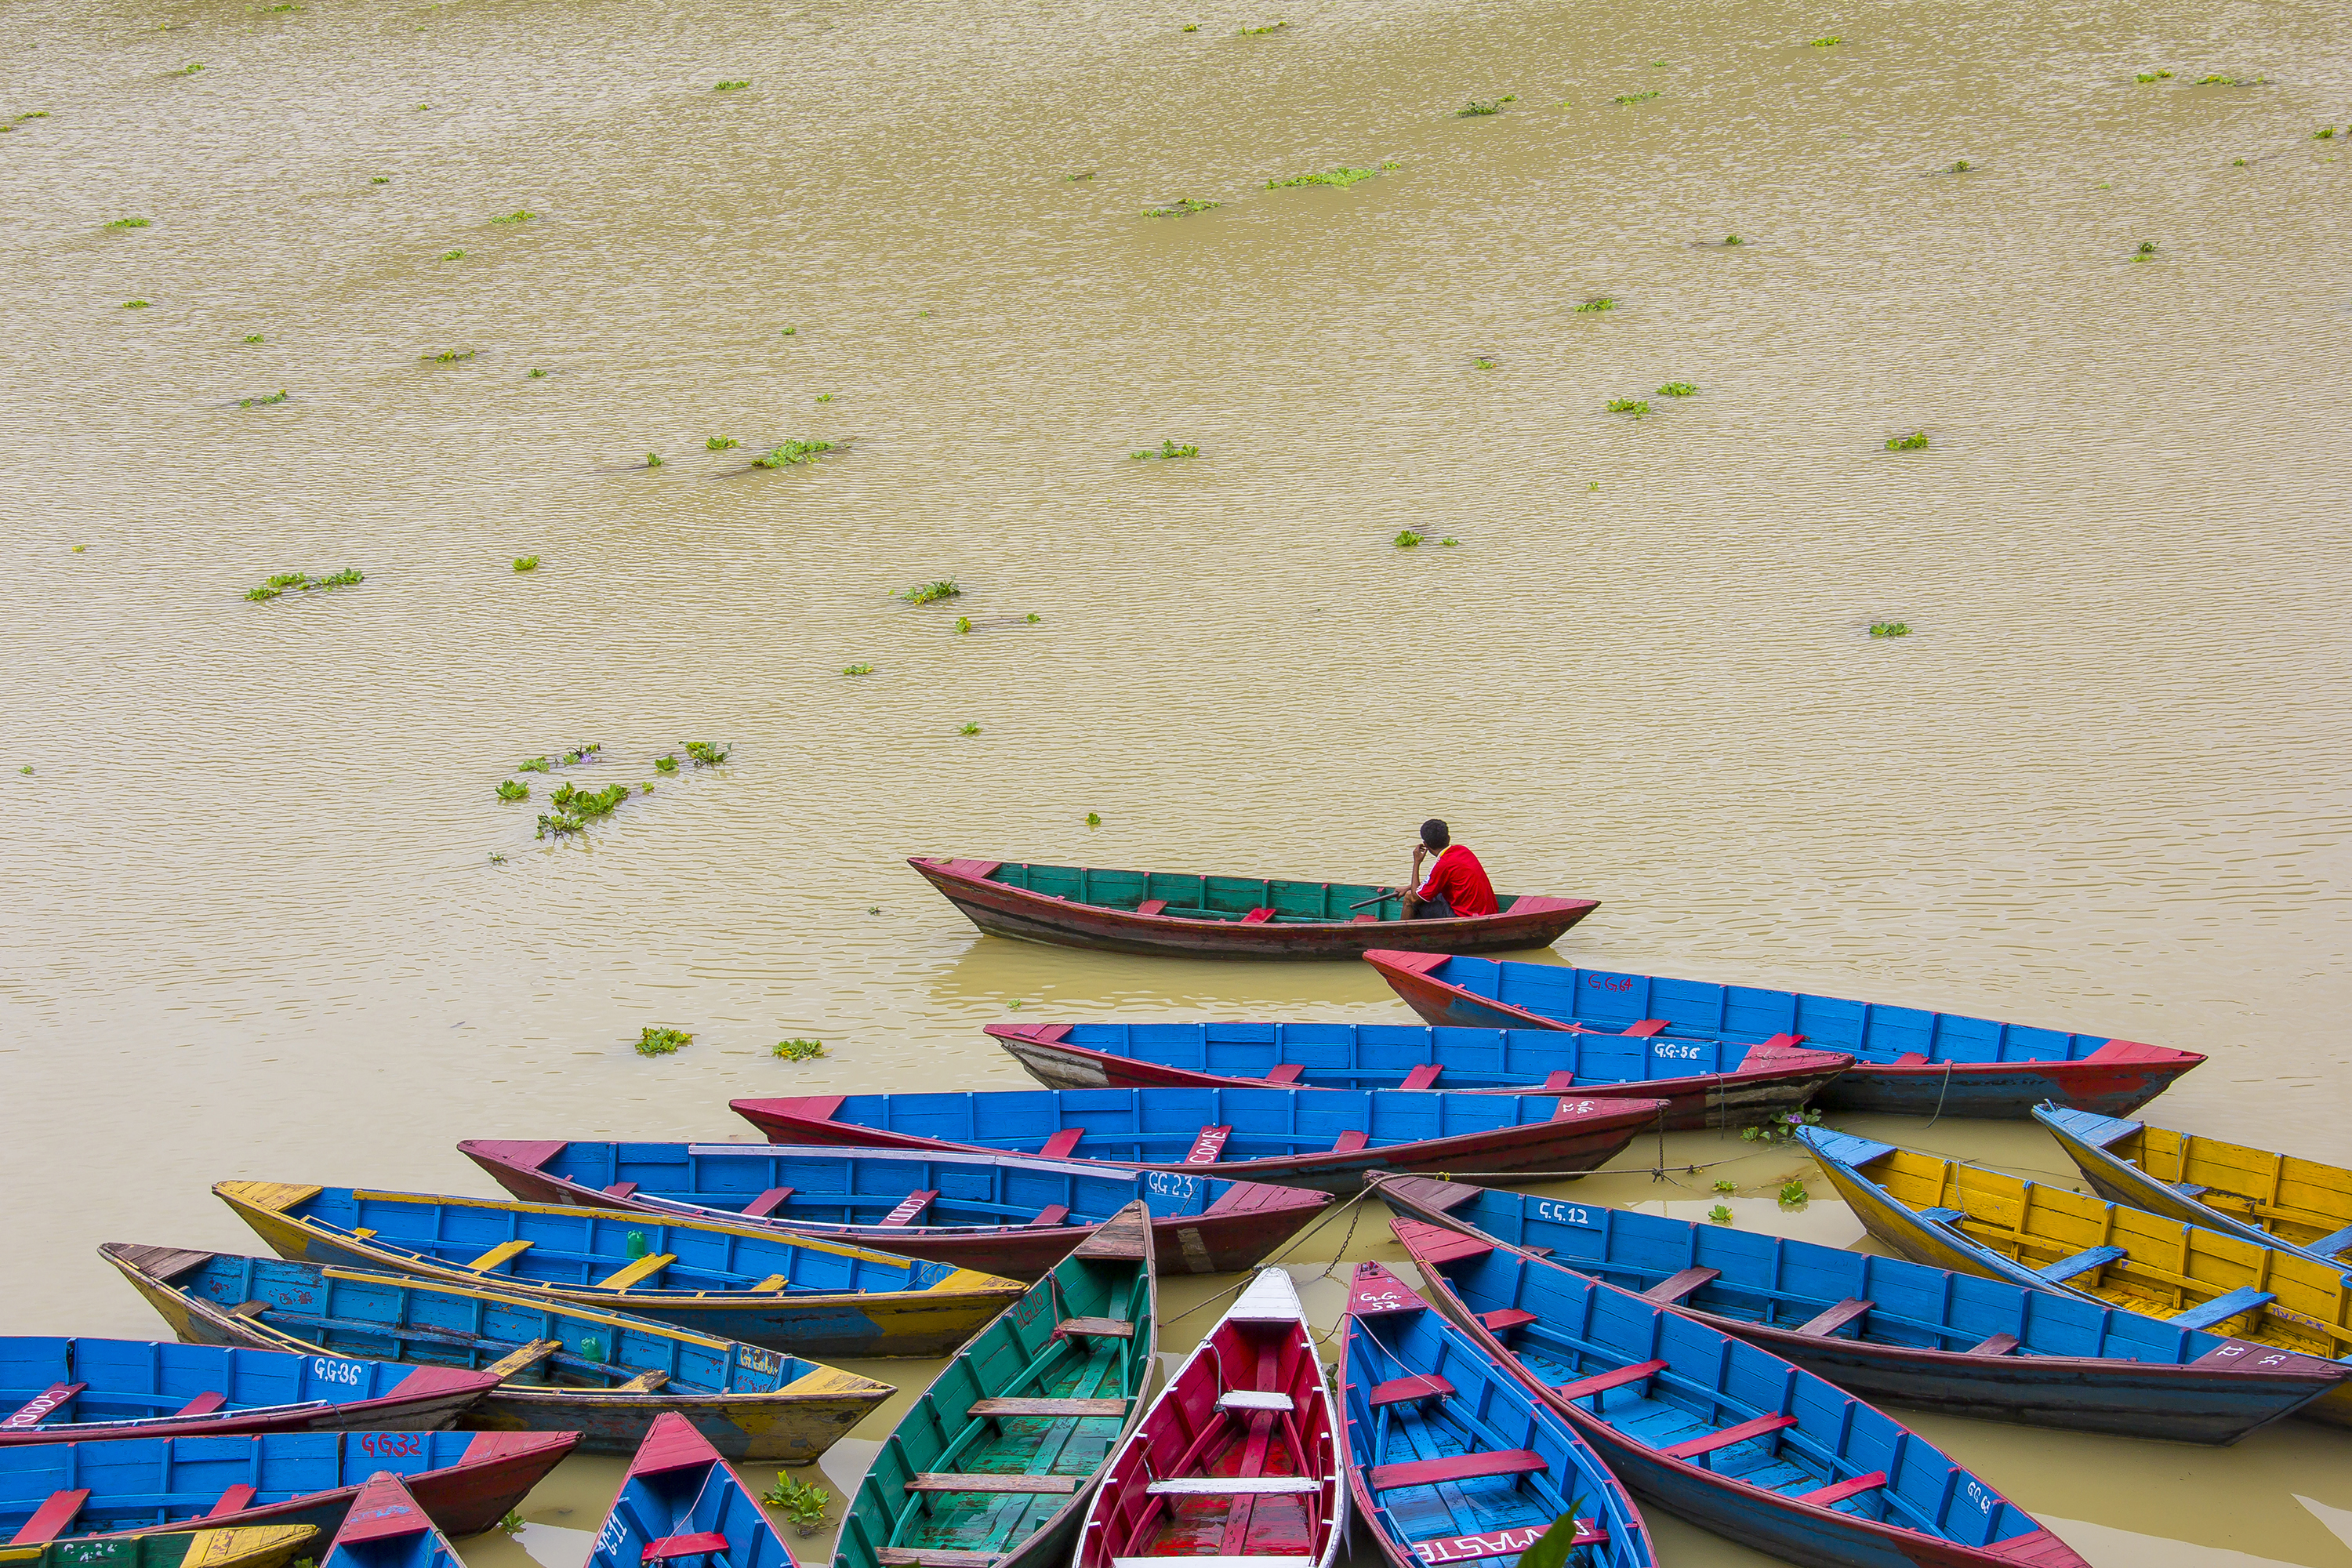 Colorful Boats waiting in the bank of Fewa Lake, Pokhara during rainy season. (By Saroj Pandey)